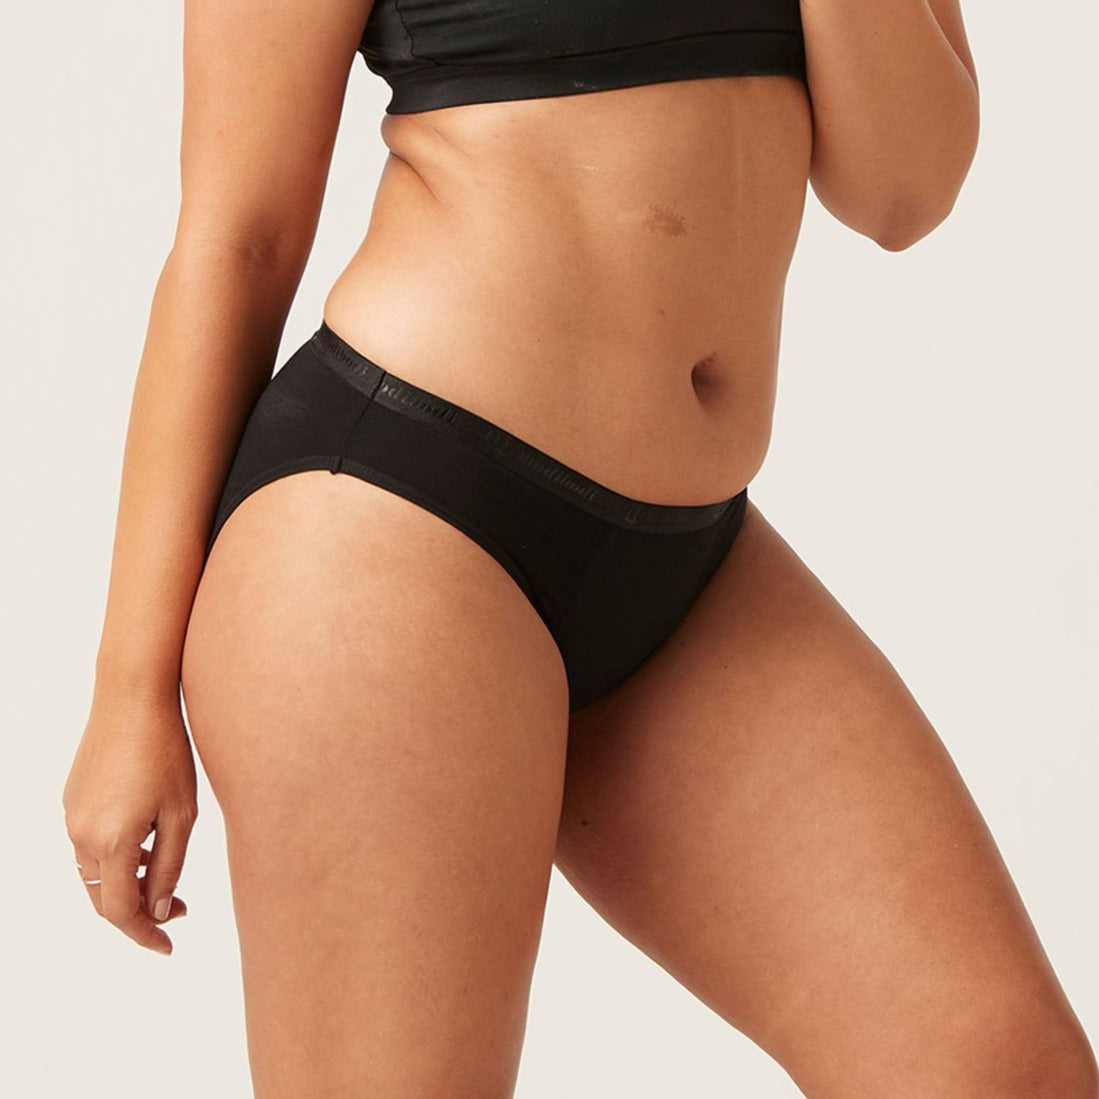 Modibodi Period Underwear Classic Bikini - MAXI-24Hrs Absorbency